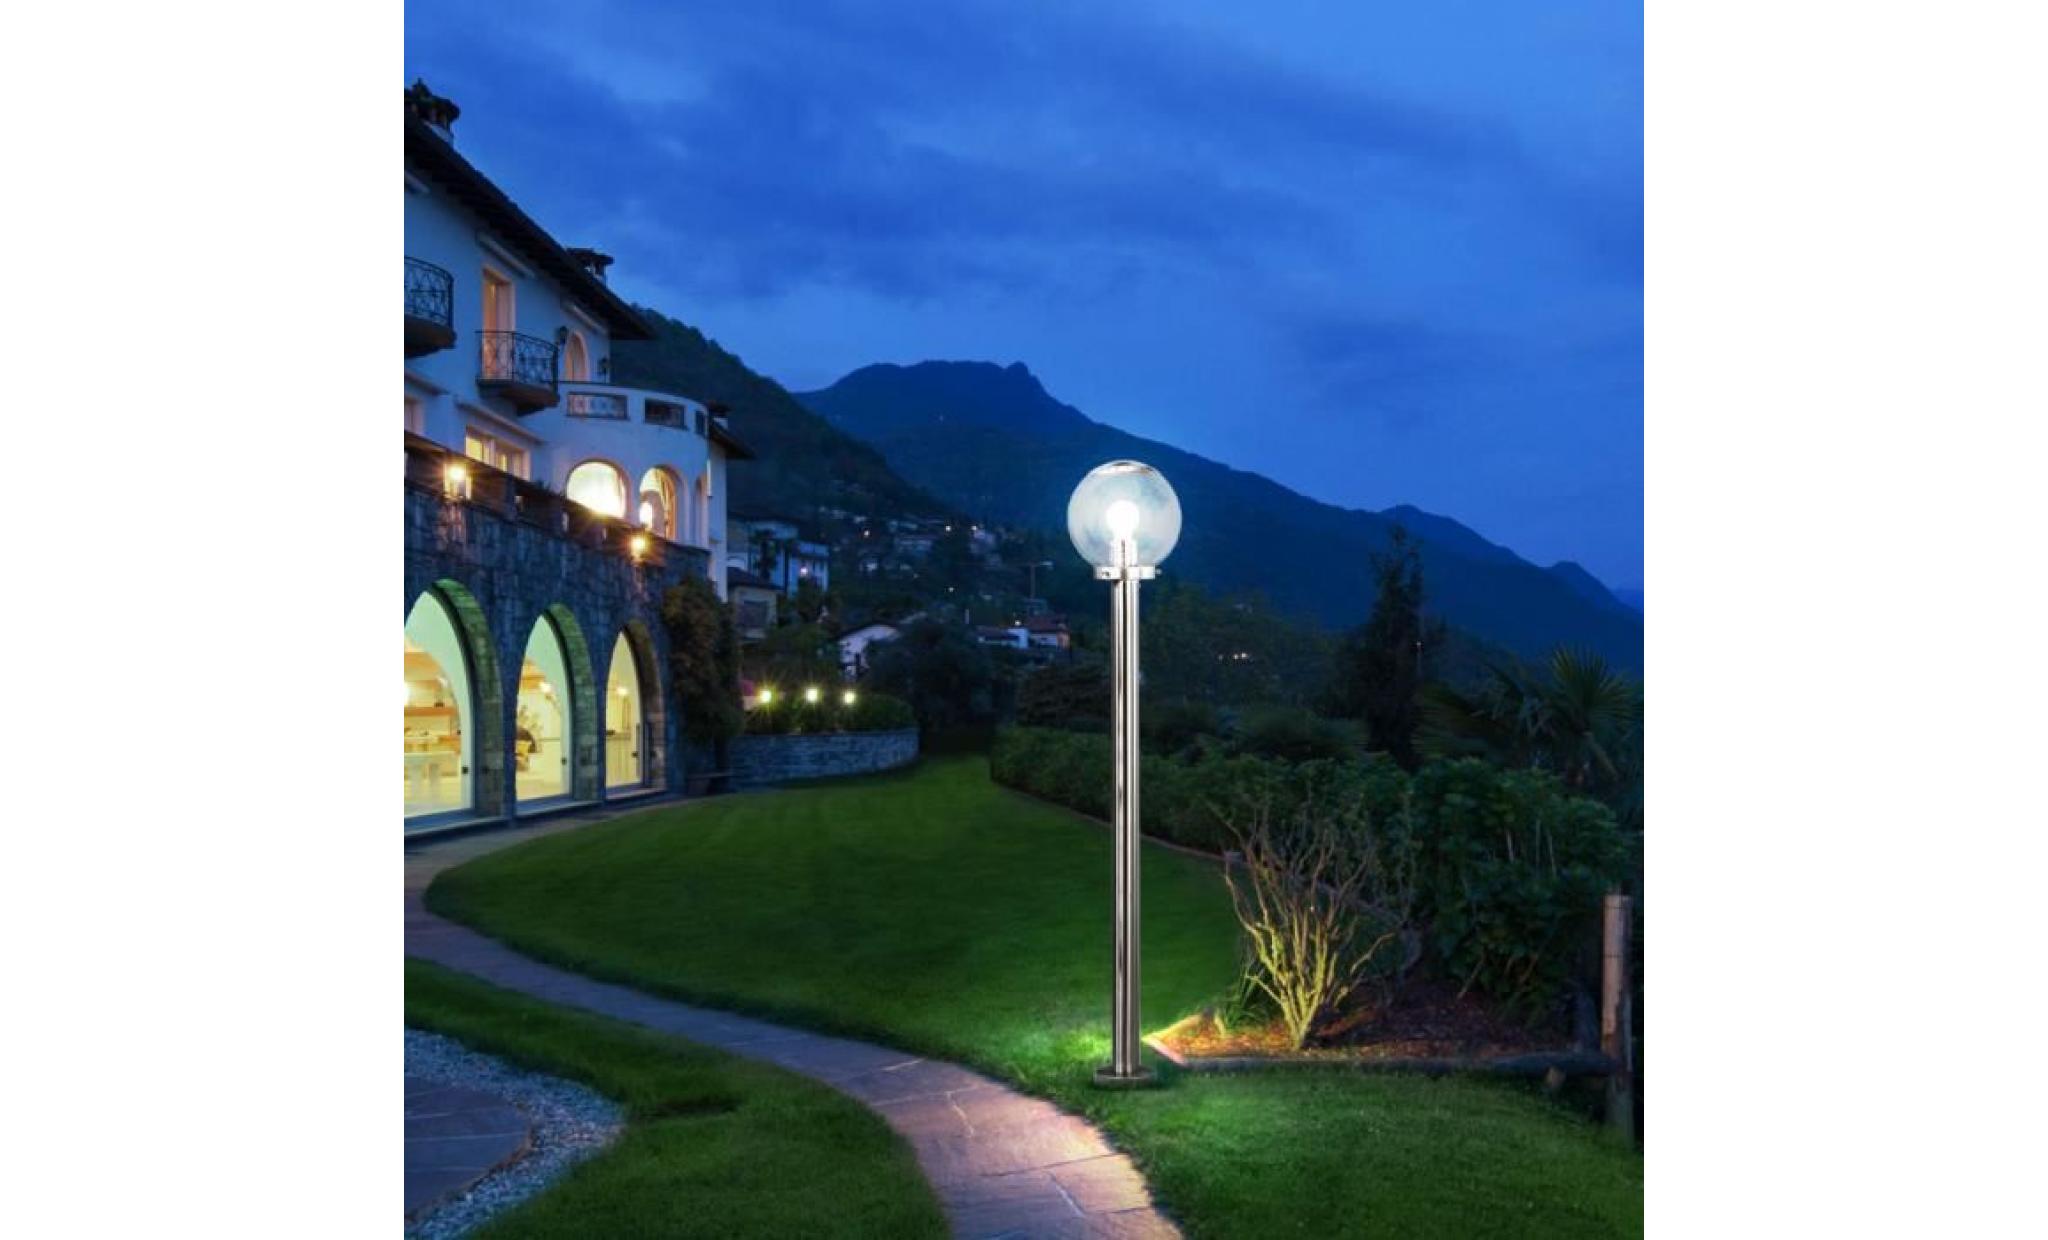 luminaire led éclairage lampe del espace extérieur boule verre acier inoxydbale jardin terrasse [variante 2]